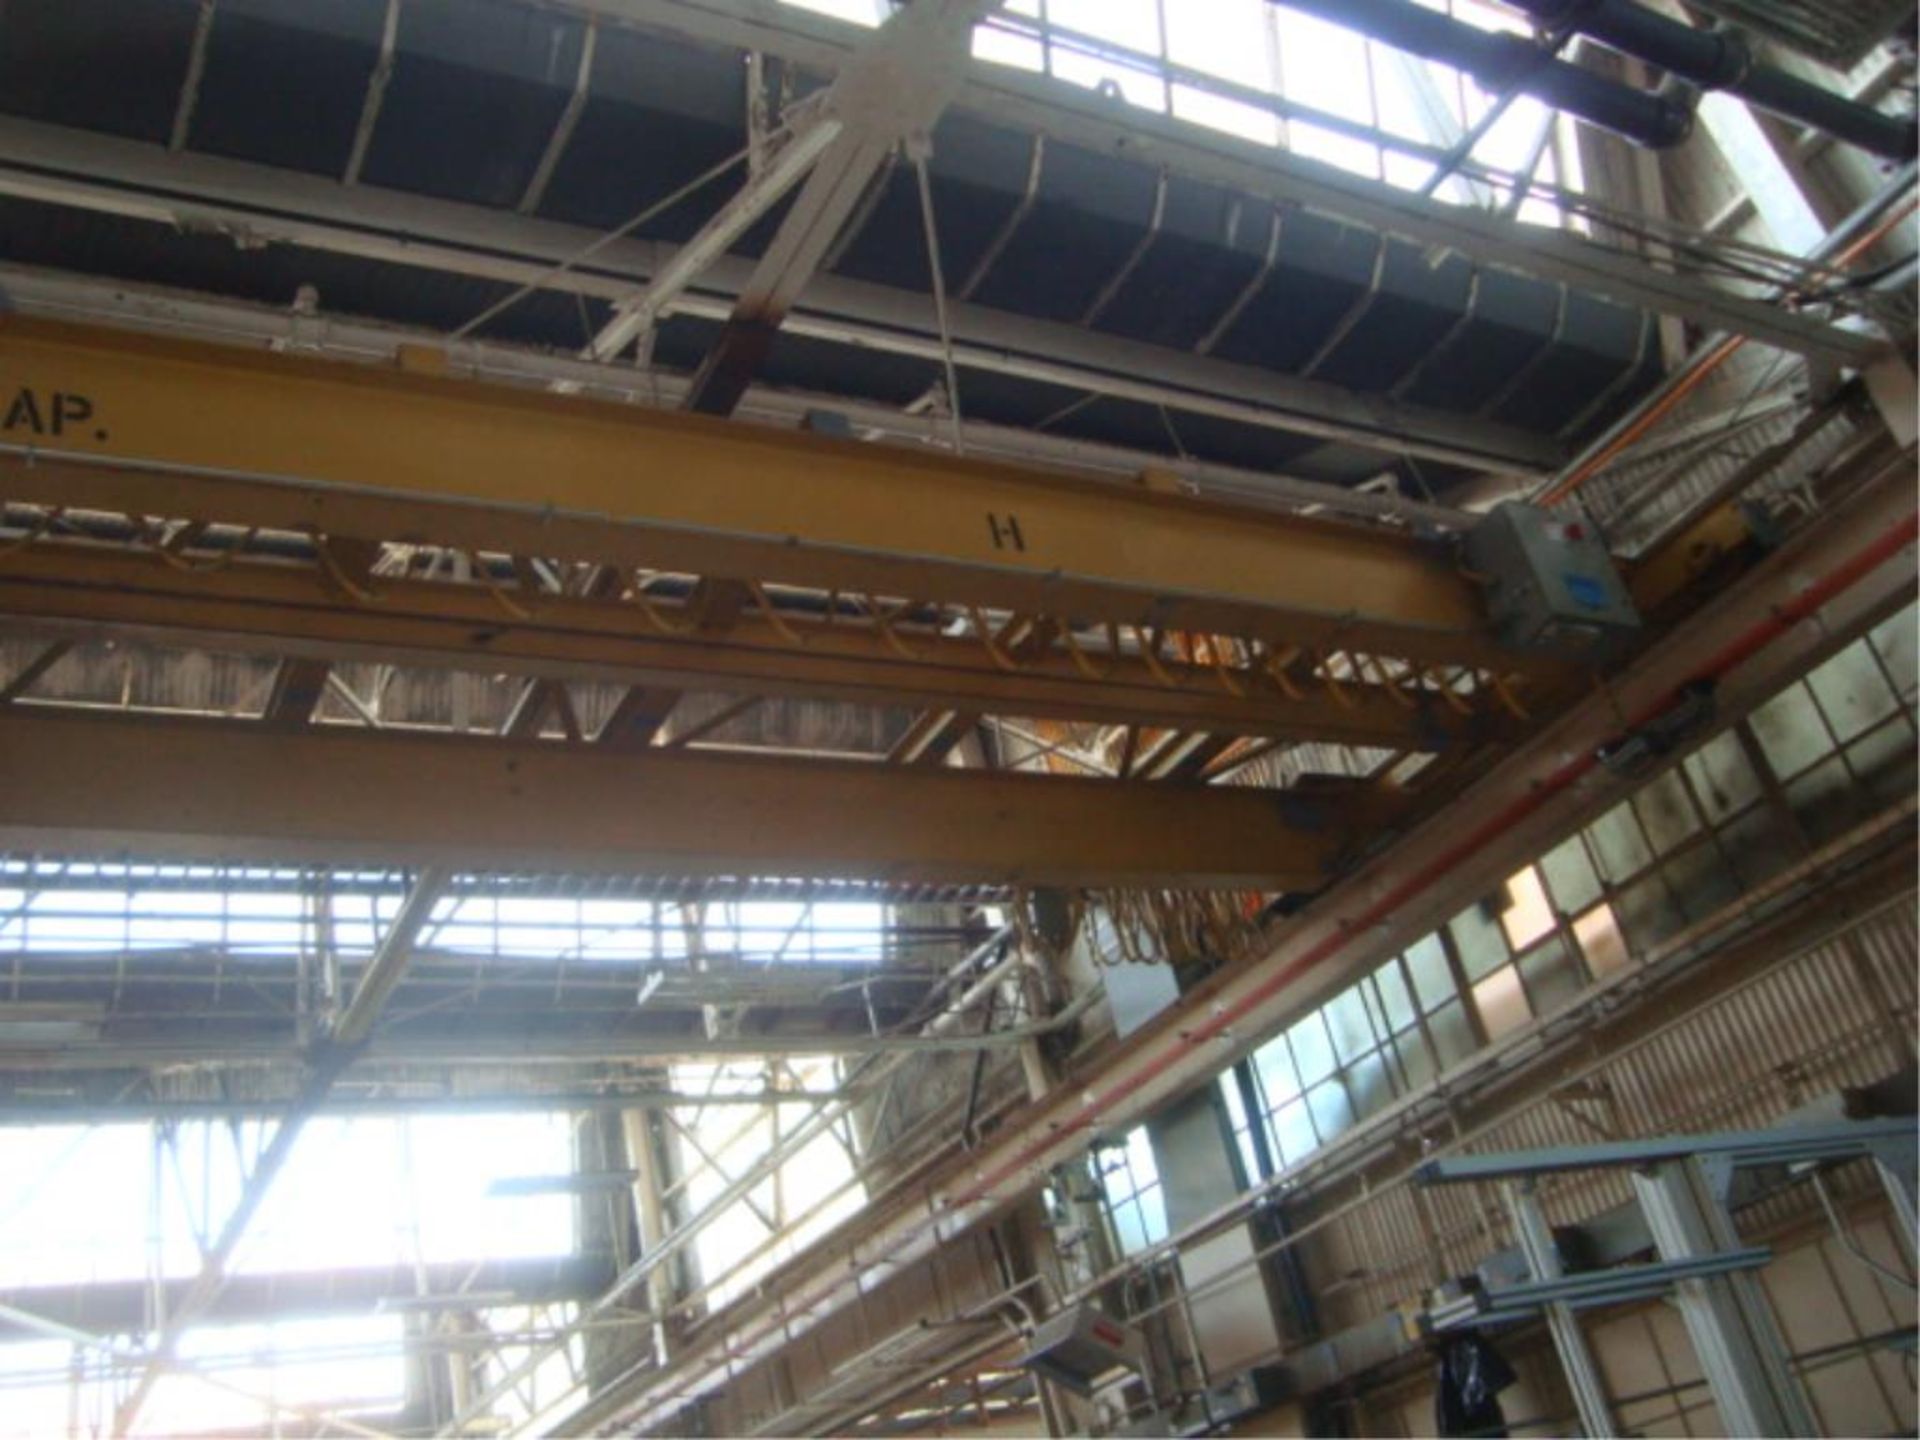 5-Ton Capacity Overhead Bridge Crane - Image 11 of 11